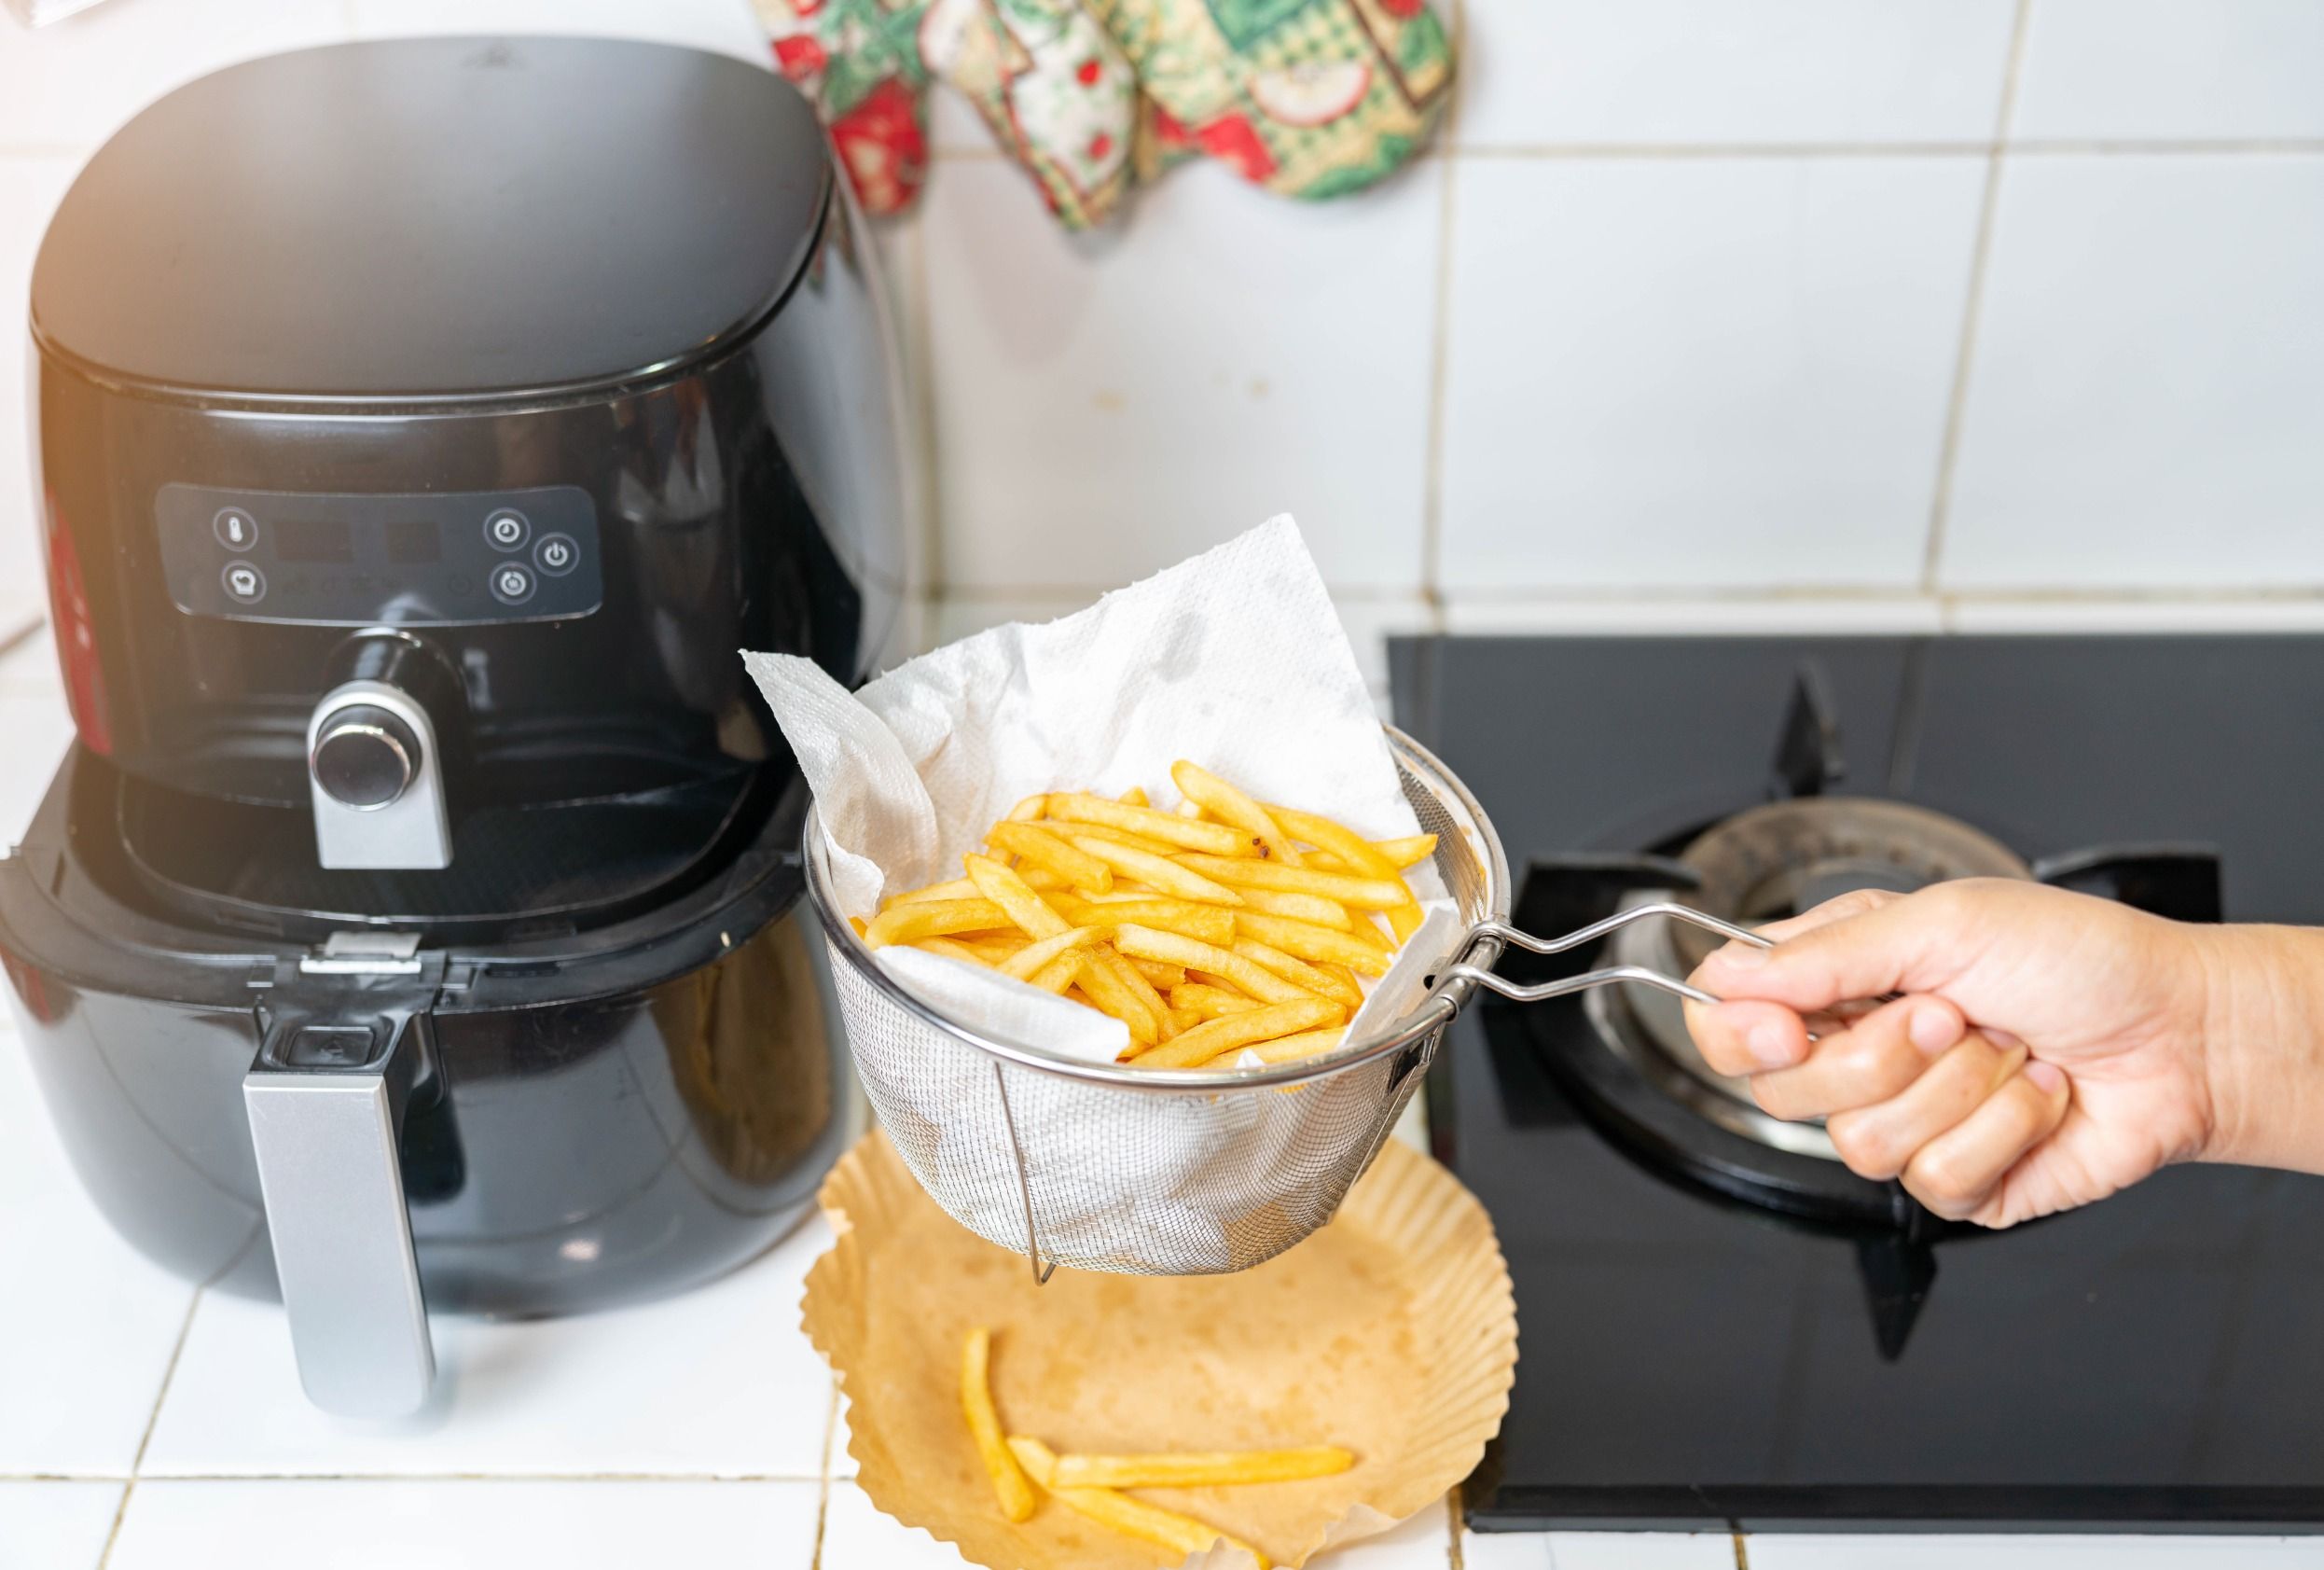 許多人會使用廚房紙巾來吸附多餘油脂，卻忽略了可能引發的食安危機。